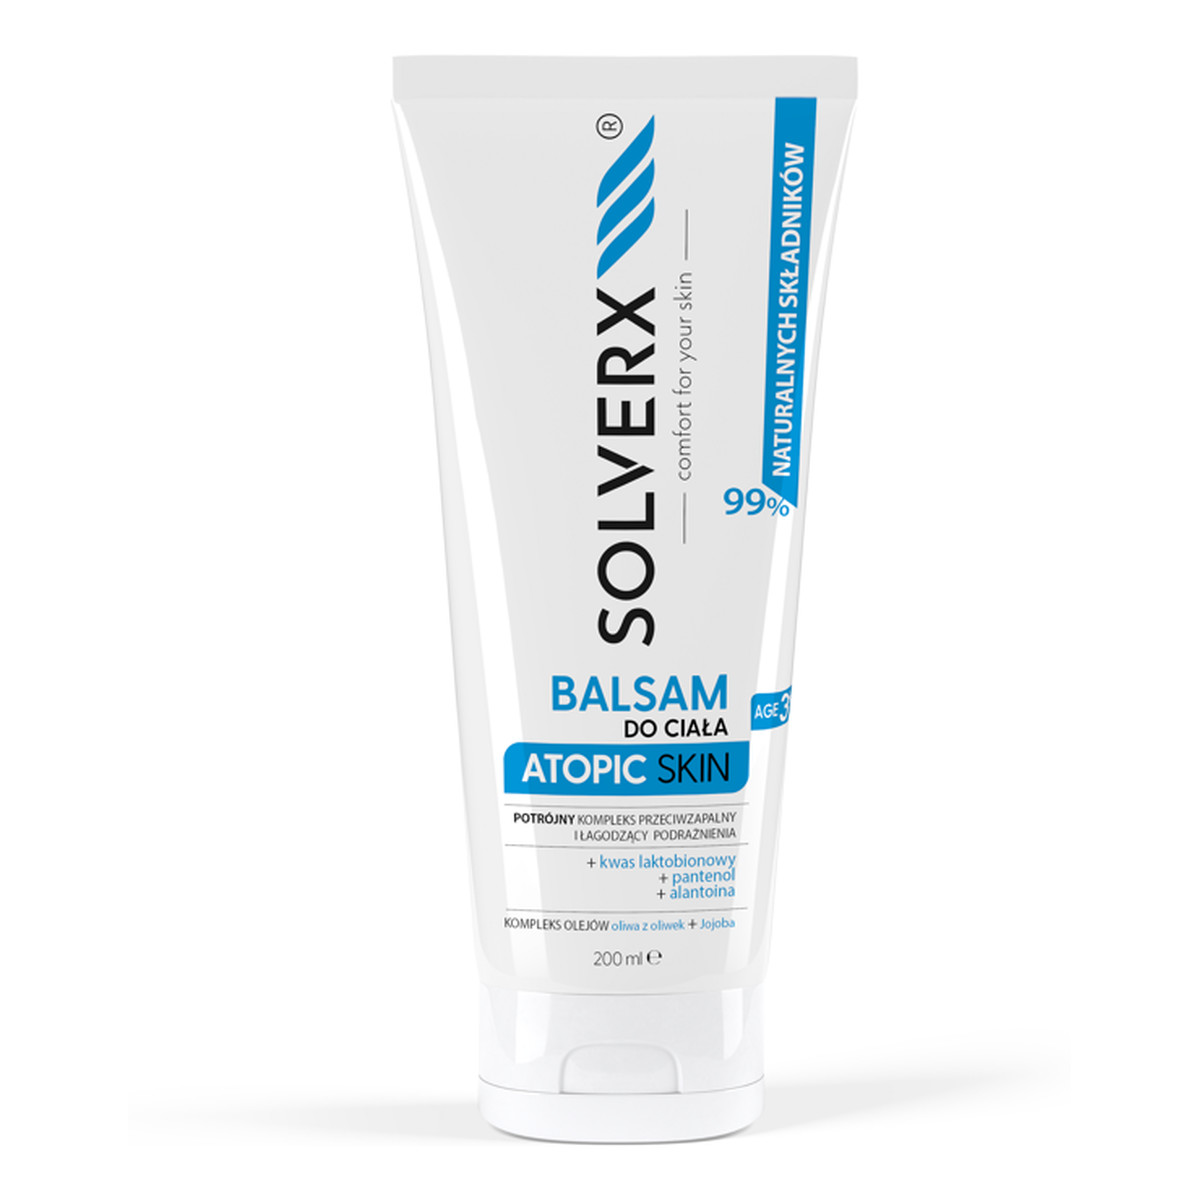 Solverx Atopic Skin Balsam do ciała - łagodzący podrażnienia i przeciwzapalny 200ml